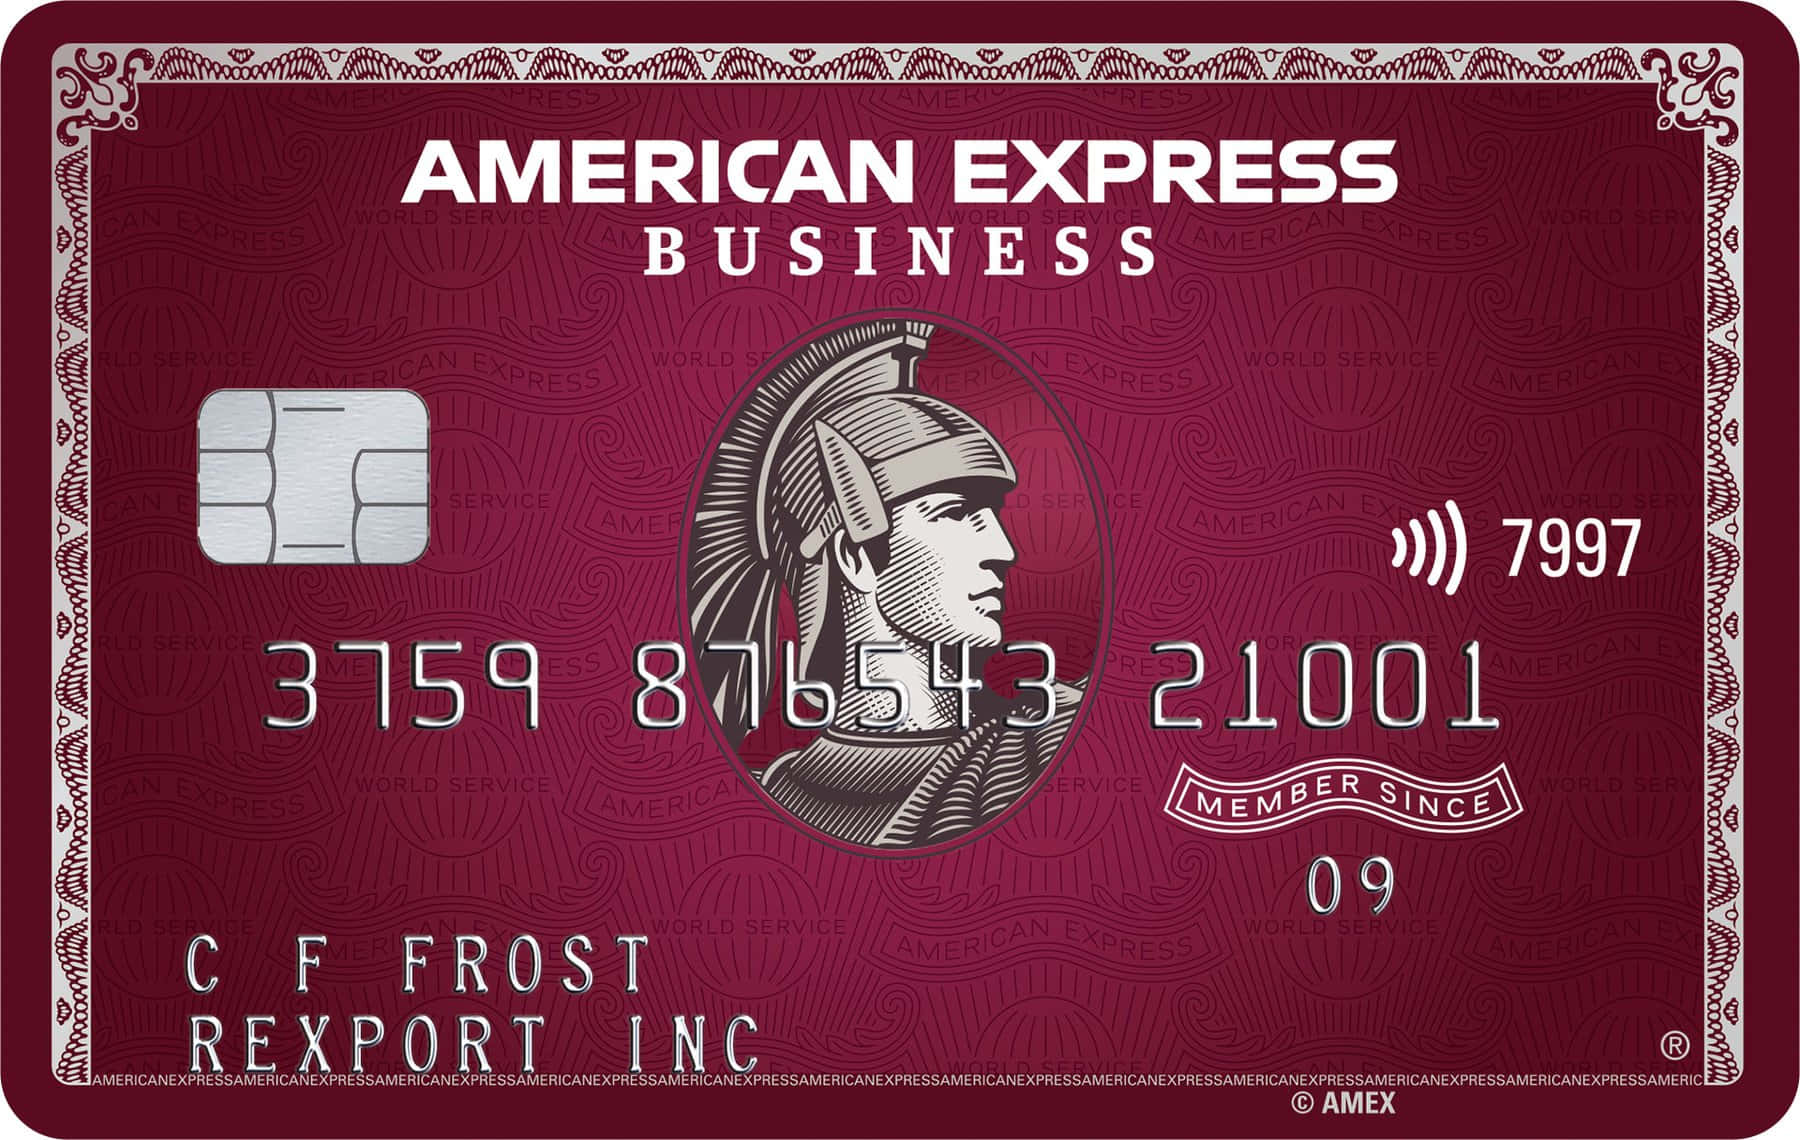 Belohnensie Sich Mit American Express